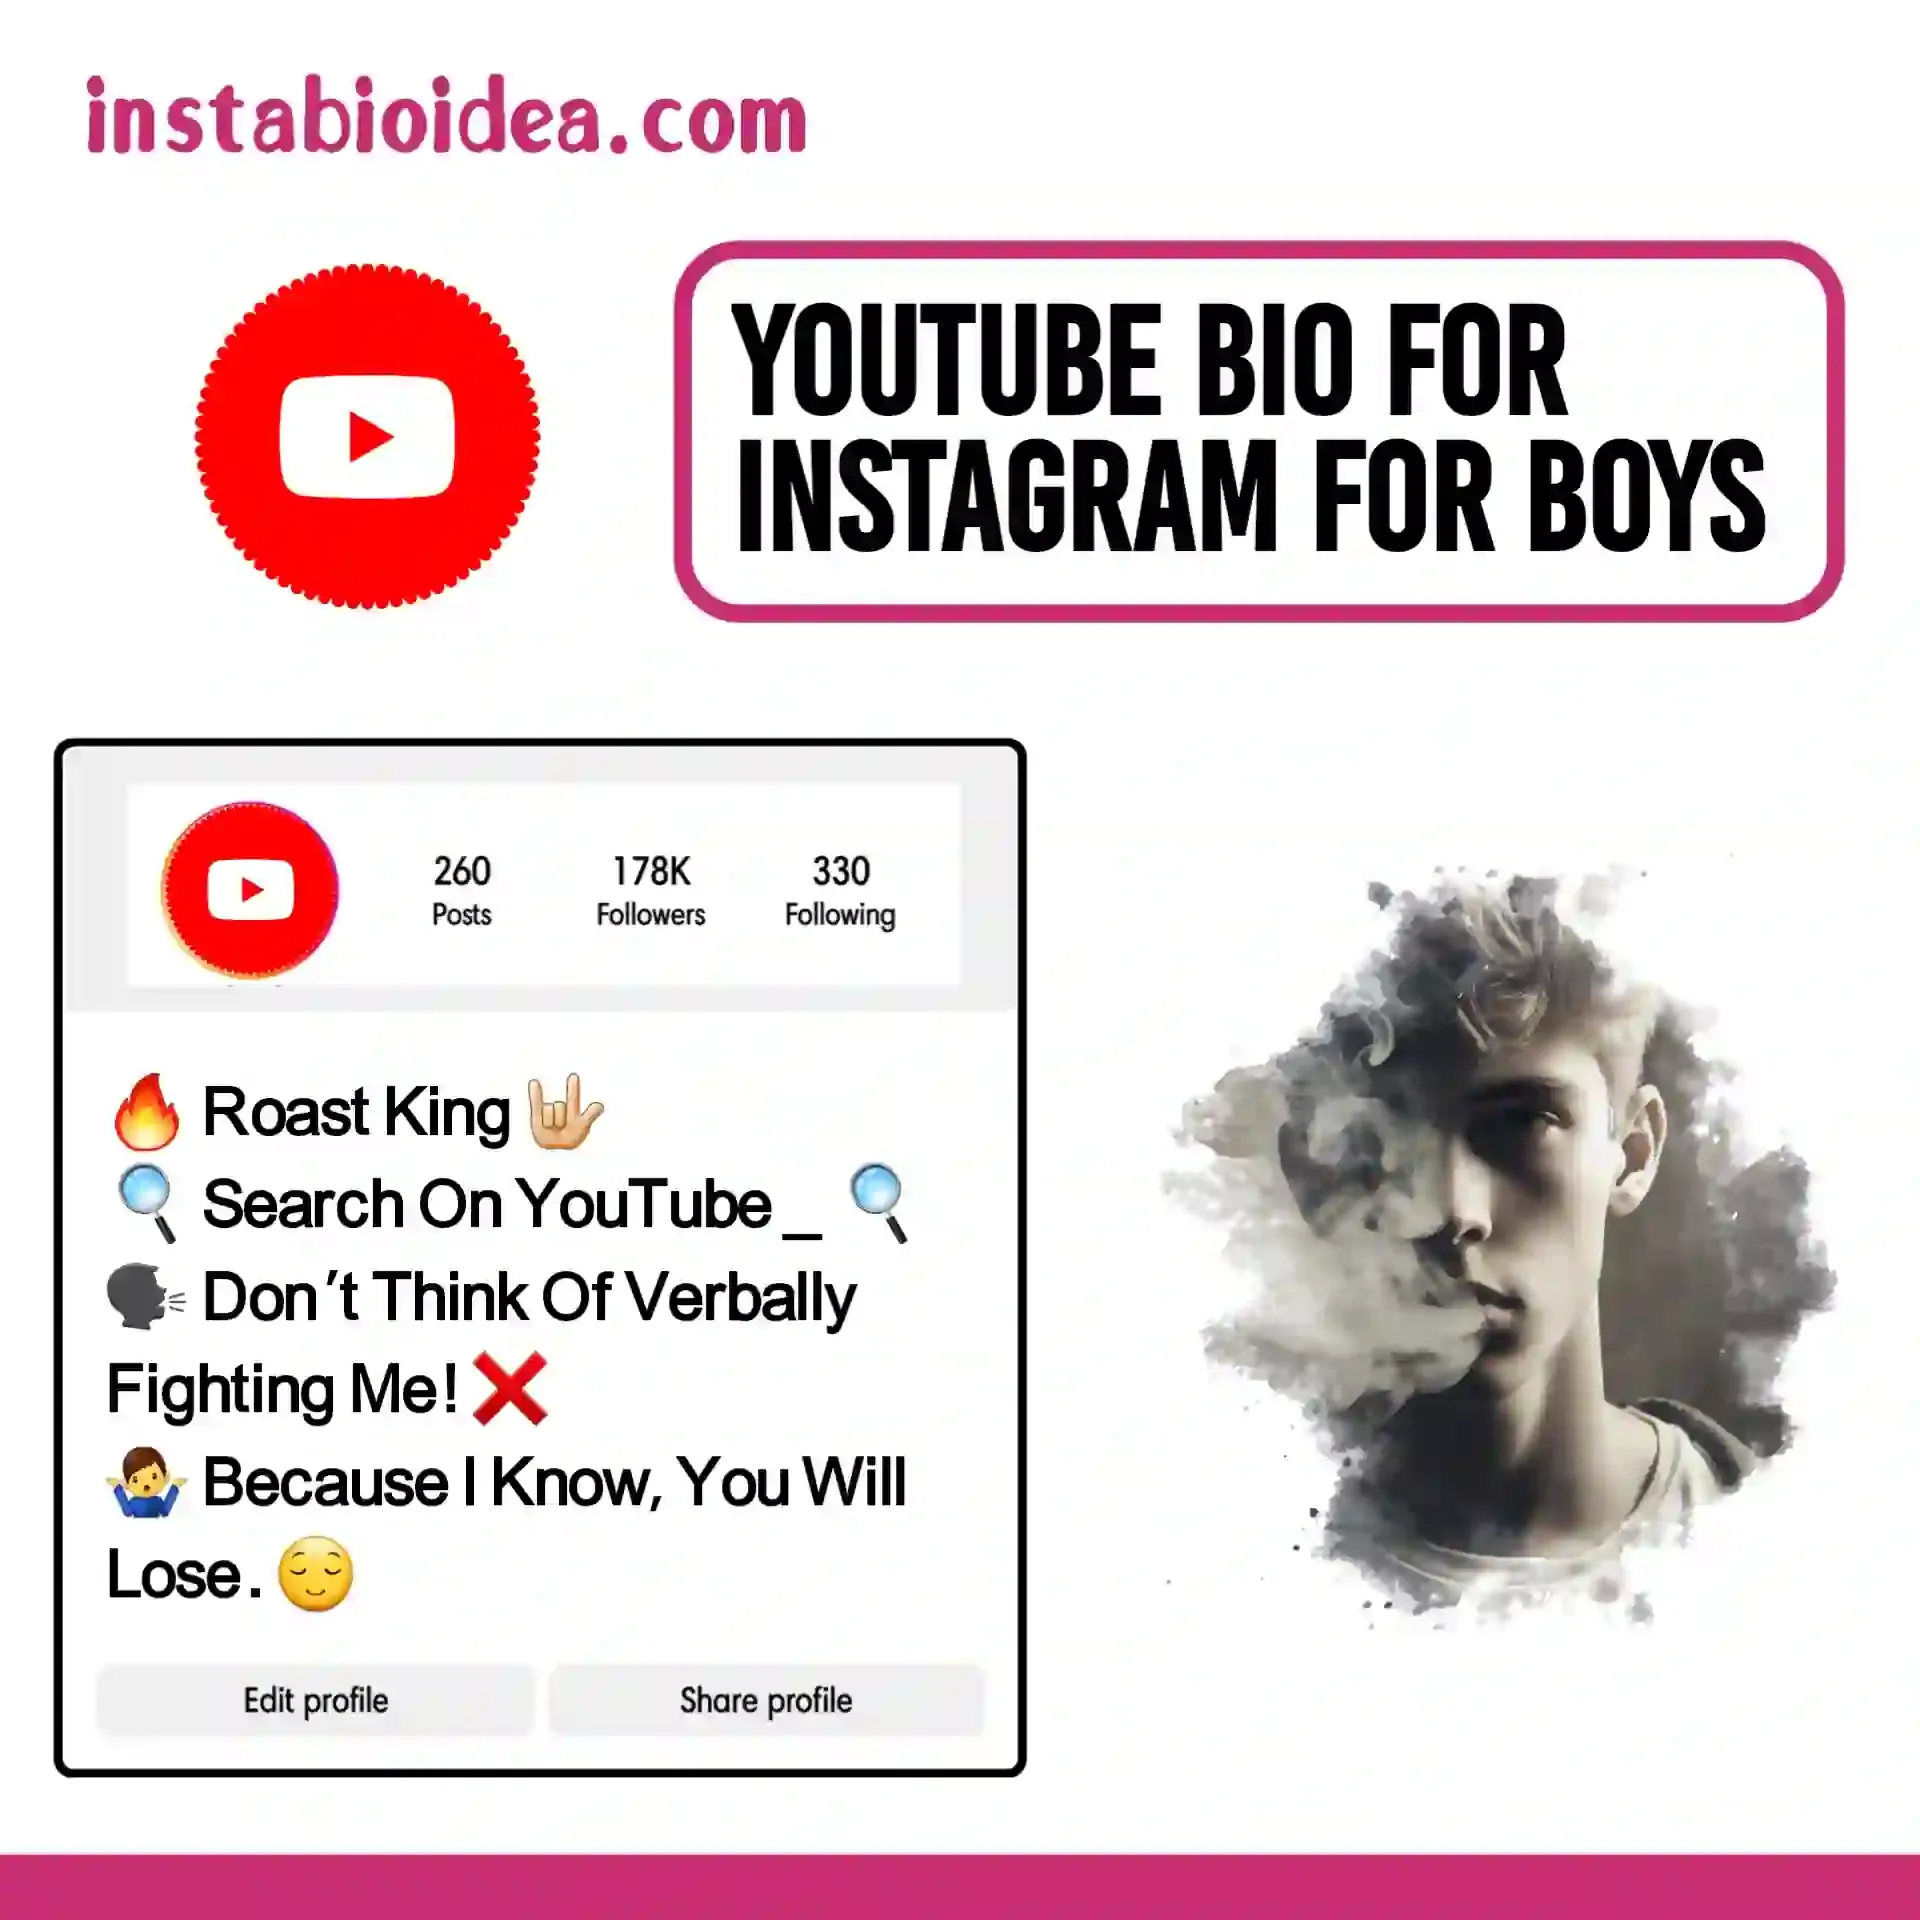 youtube bio for instagram for boys image